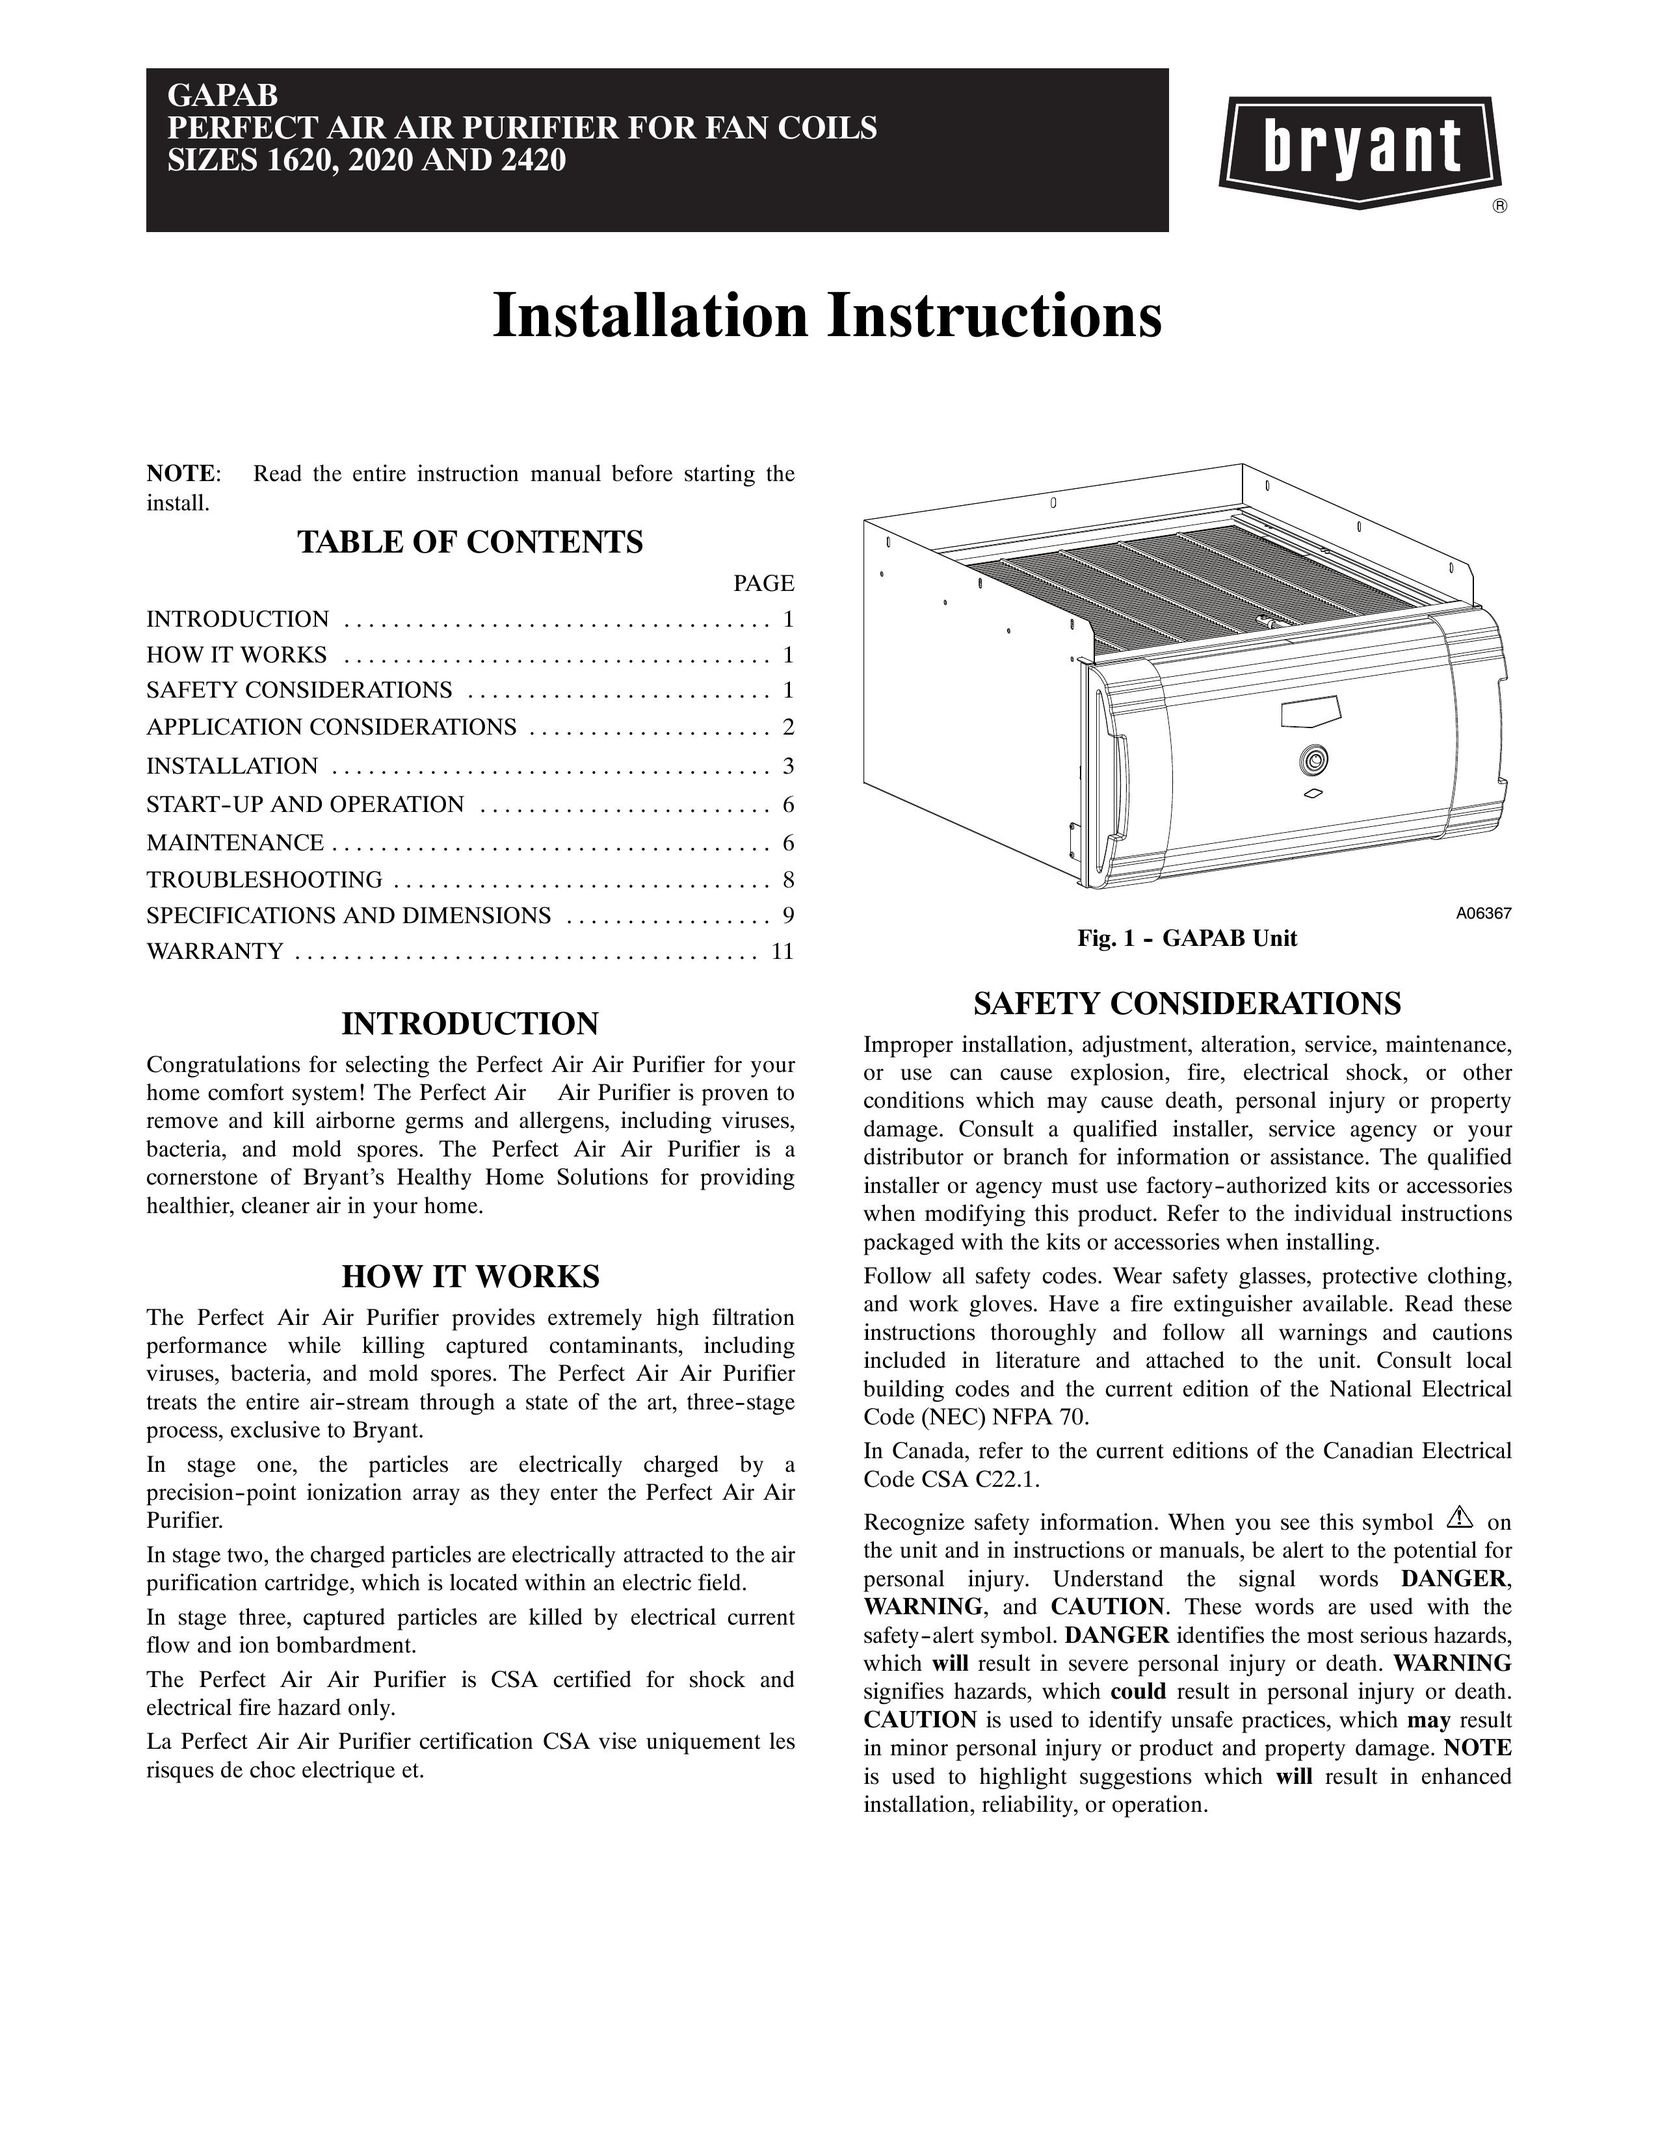 Bryant 1620 Air Cleaner User Manual